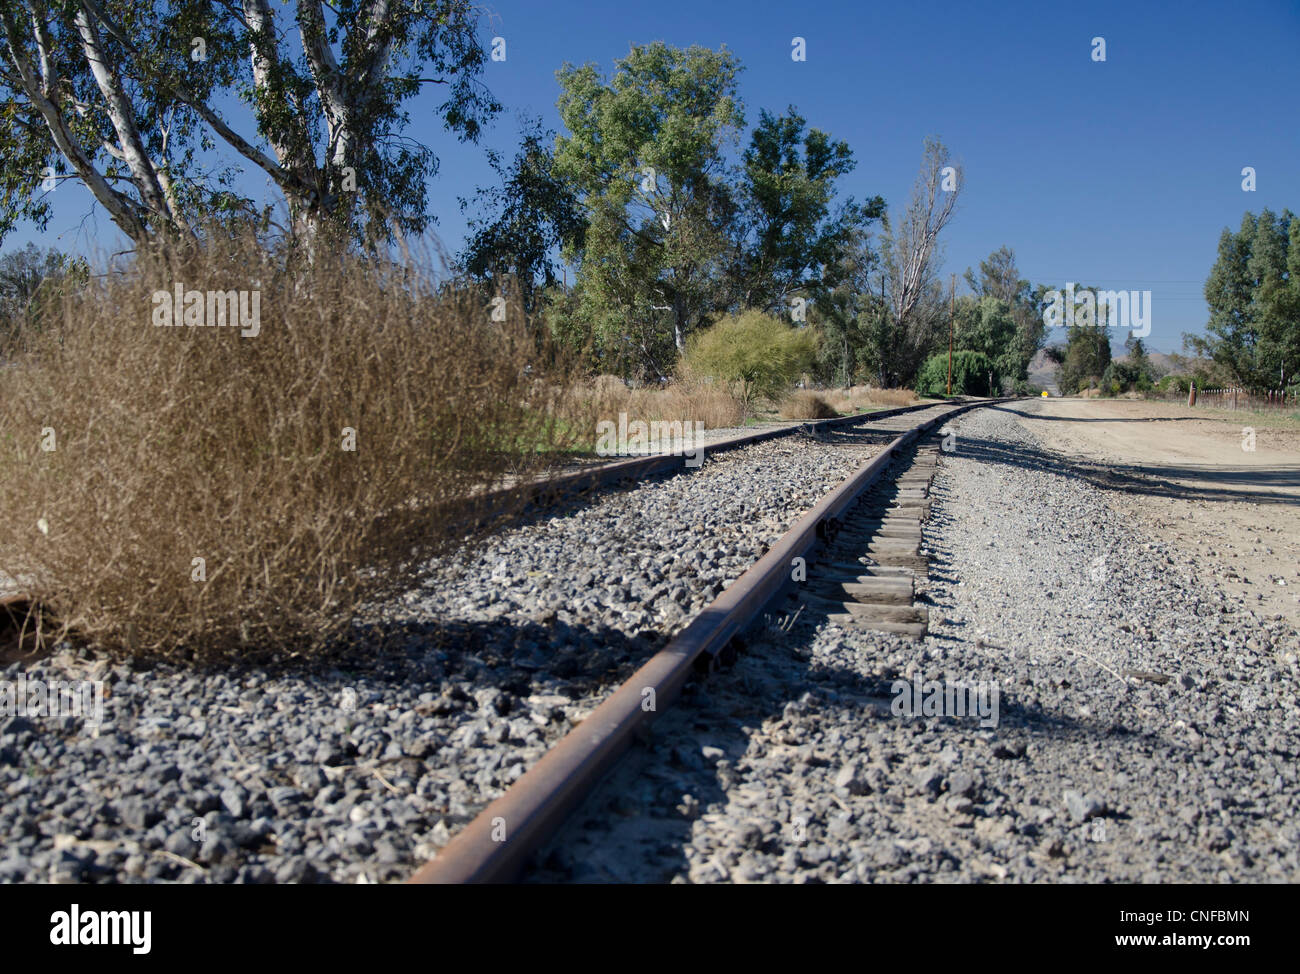 Ancienne voie ferrée abandonnée, disparaître au loin. Un Tumbleweed repose sur la route. Les voies de la ligne des arbres. Banque D'Images